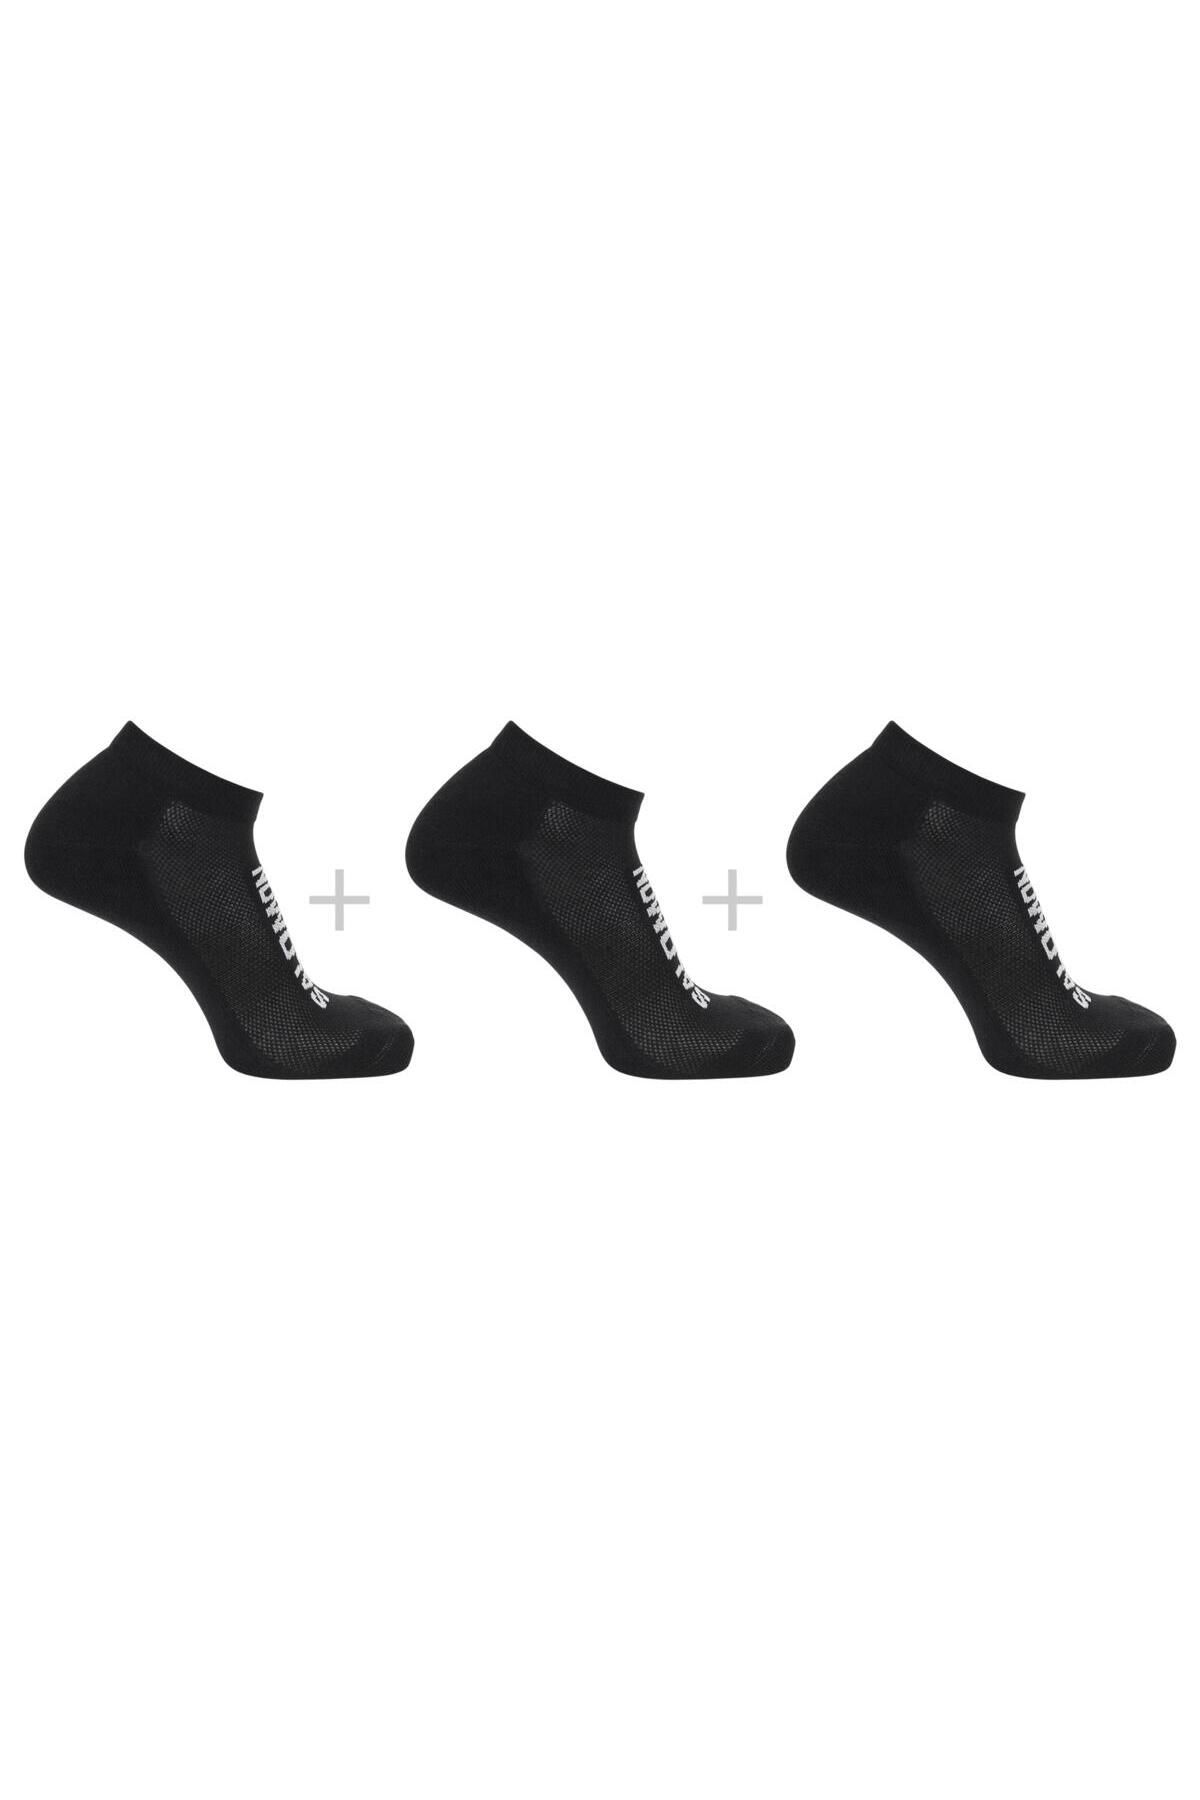 Salomon Lc2086900 Everyday Low 3-Pack Çorap Siyah Unisex Çorap